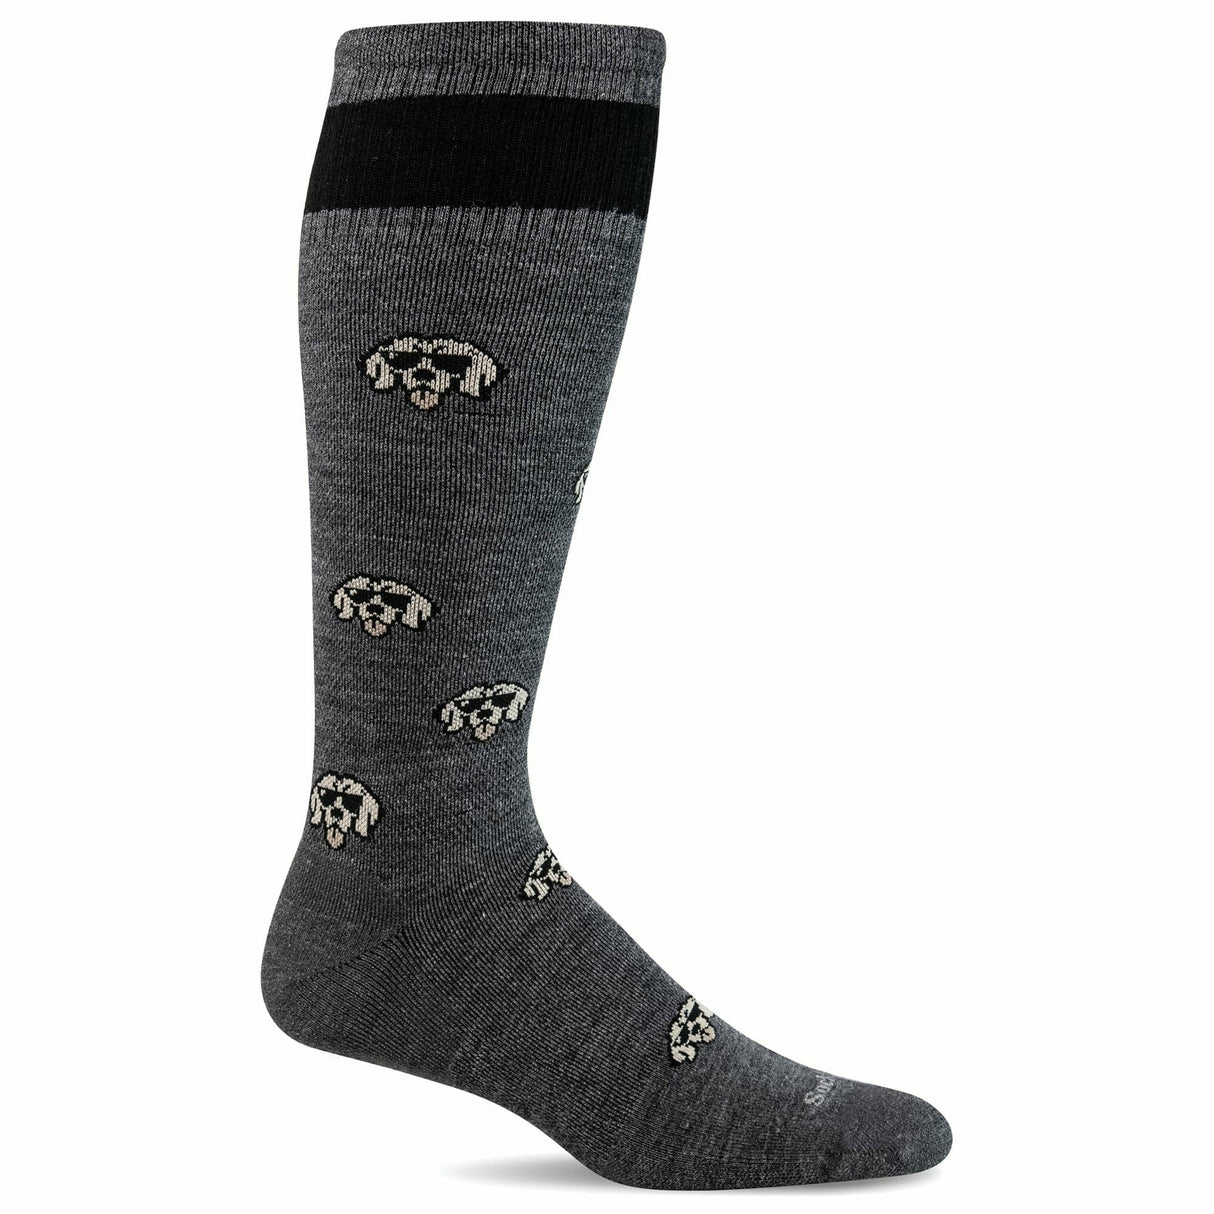 Sockwell Mens Big Dog Moderate Compression OTC Socks  -  Medium/Large / Charcoal